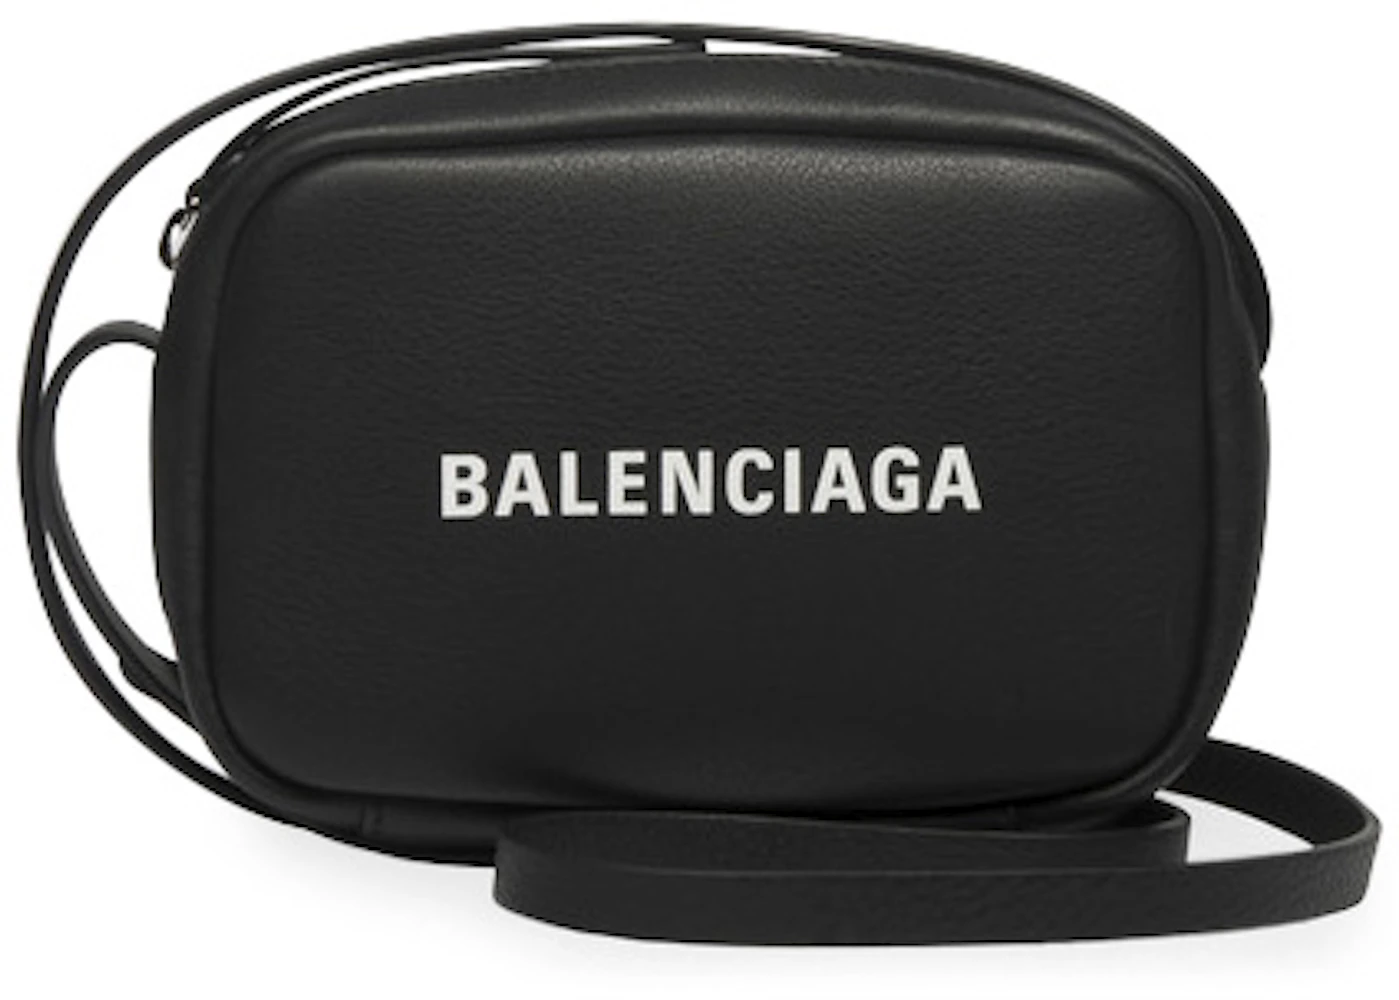 Balenciaga Metallic Calfskin Everyday XS Camera Bag (SHF-22474